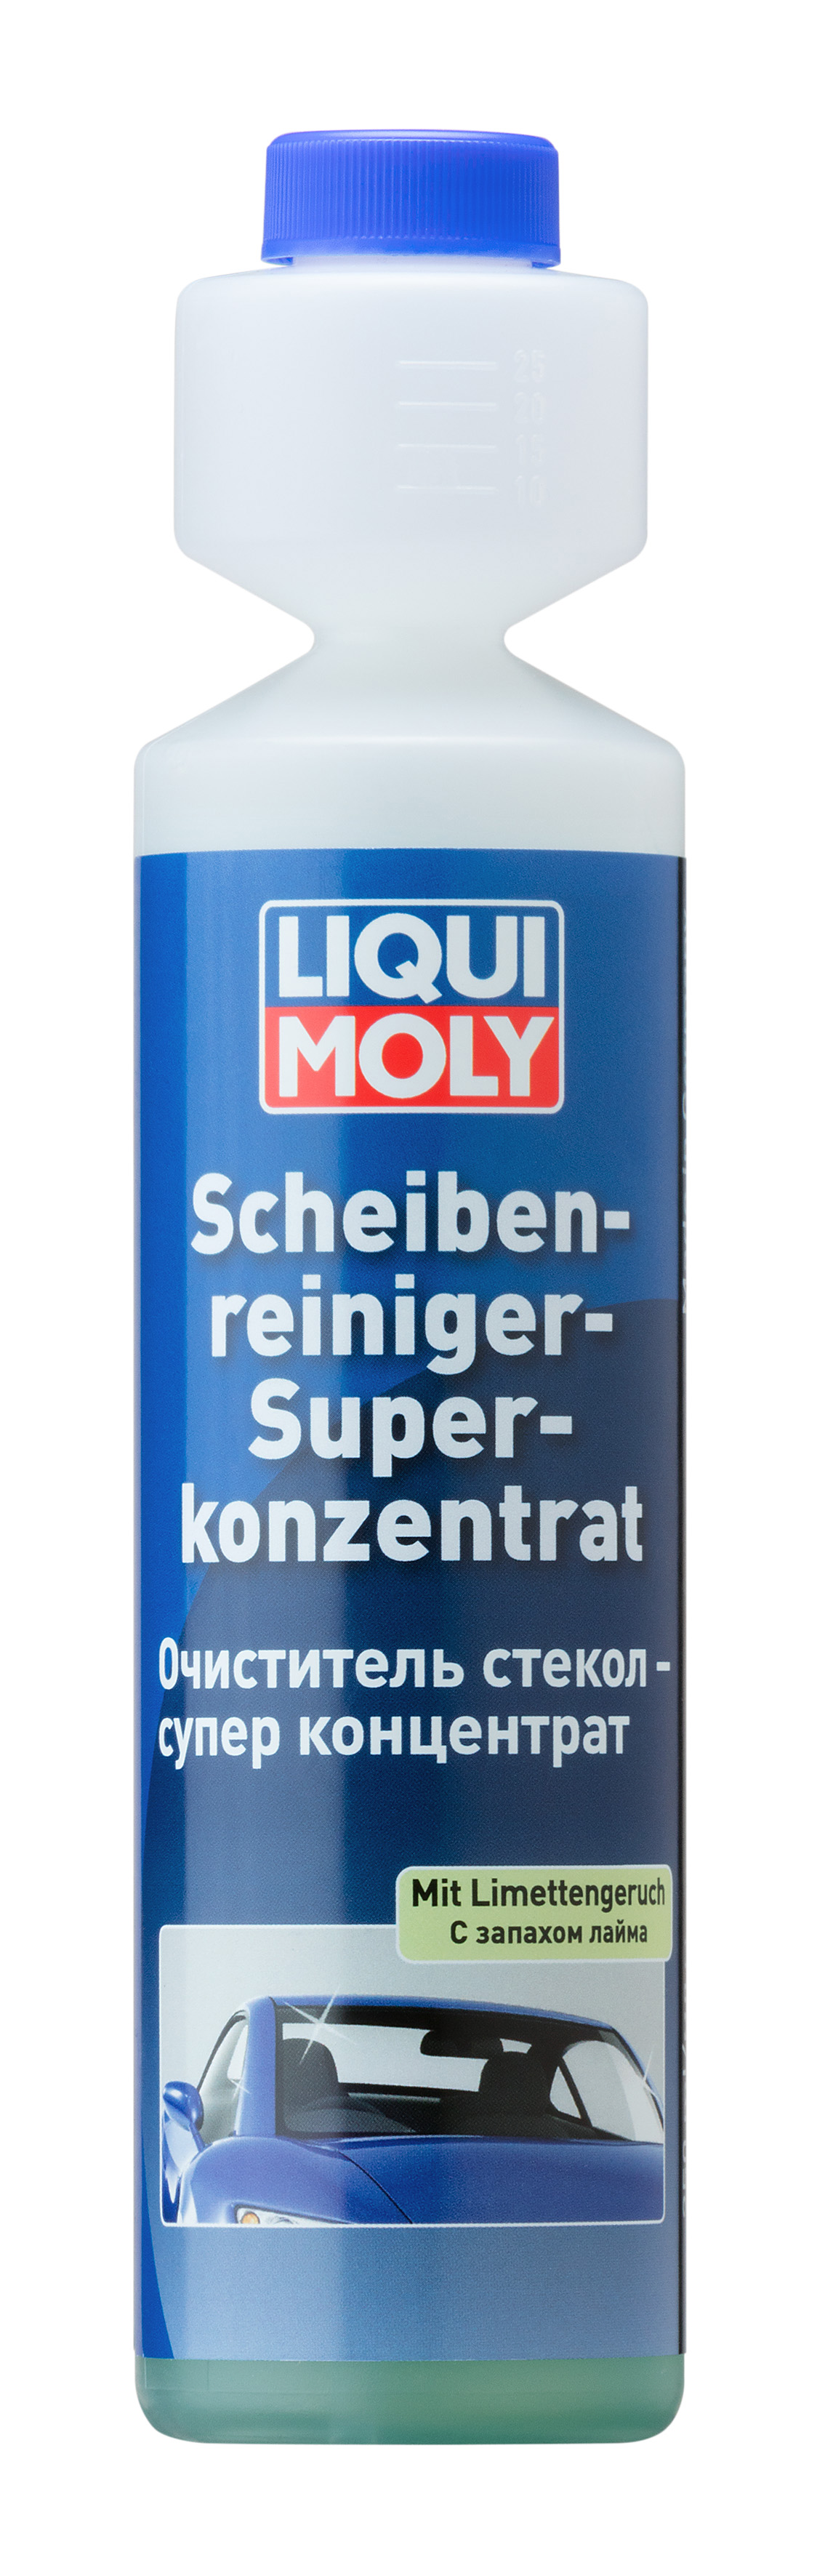 Замена 7612 Очиститель стекол суперконцентрат Scheiben-Reiniger-Super K. 0,25л (лайм) - Liqui Moly 2385